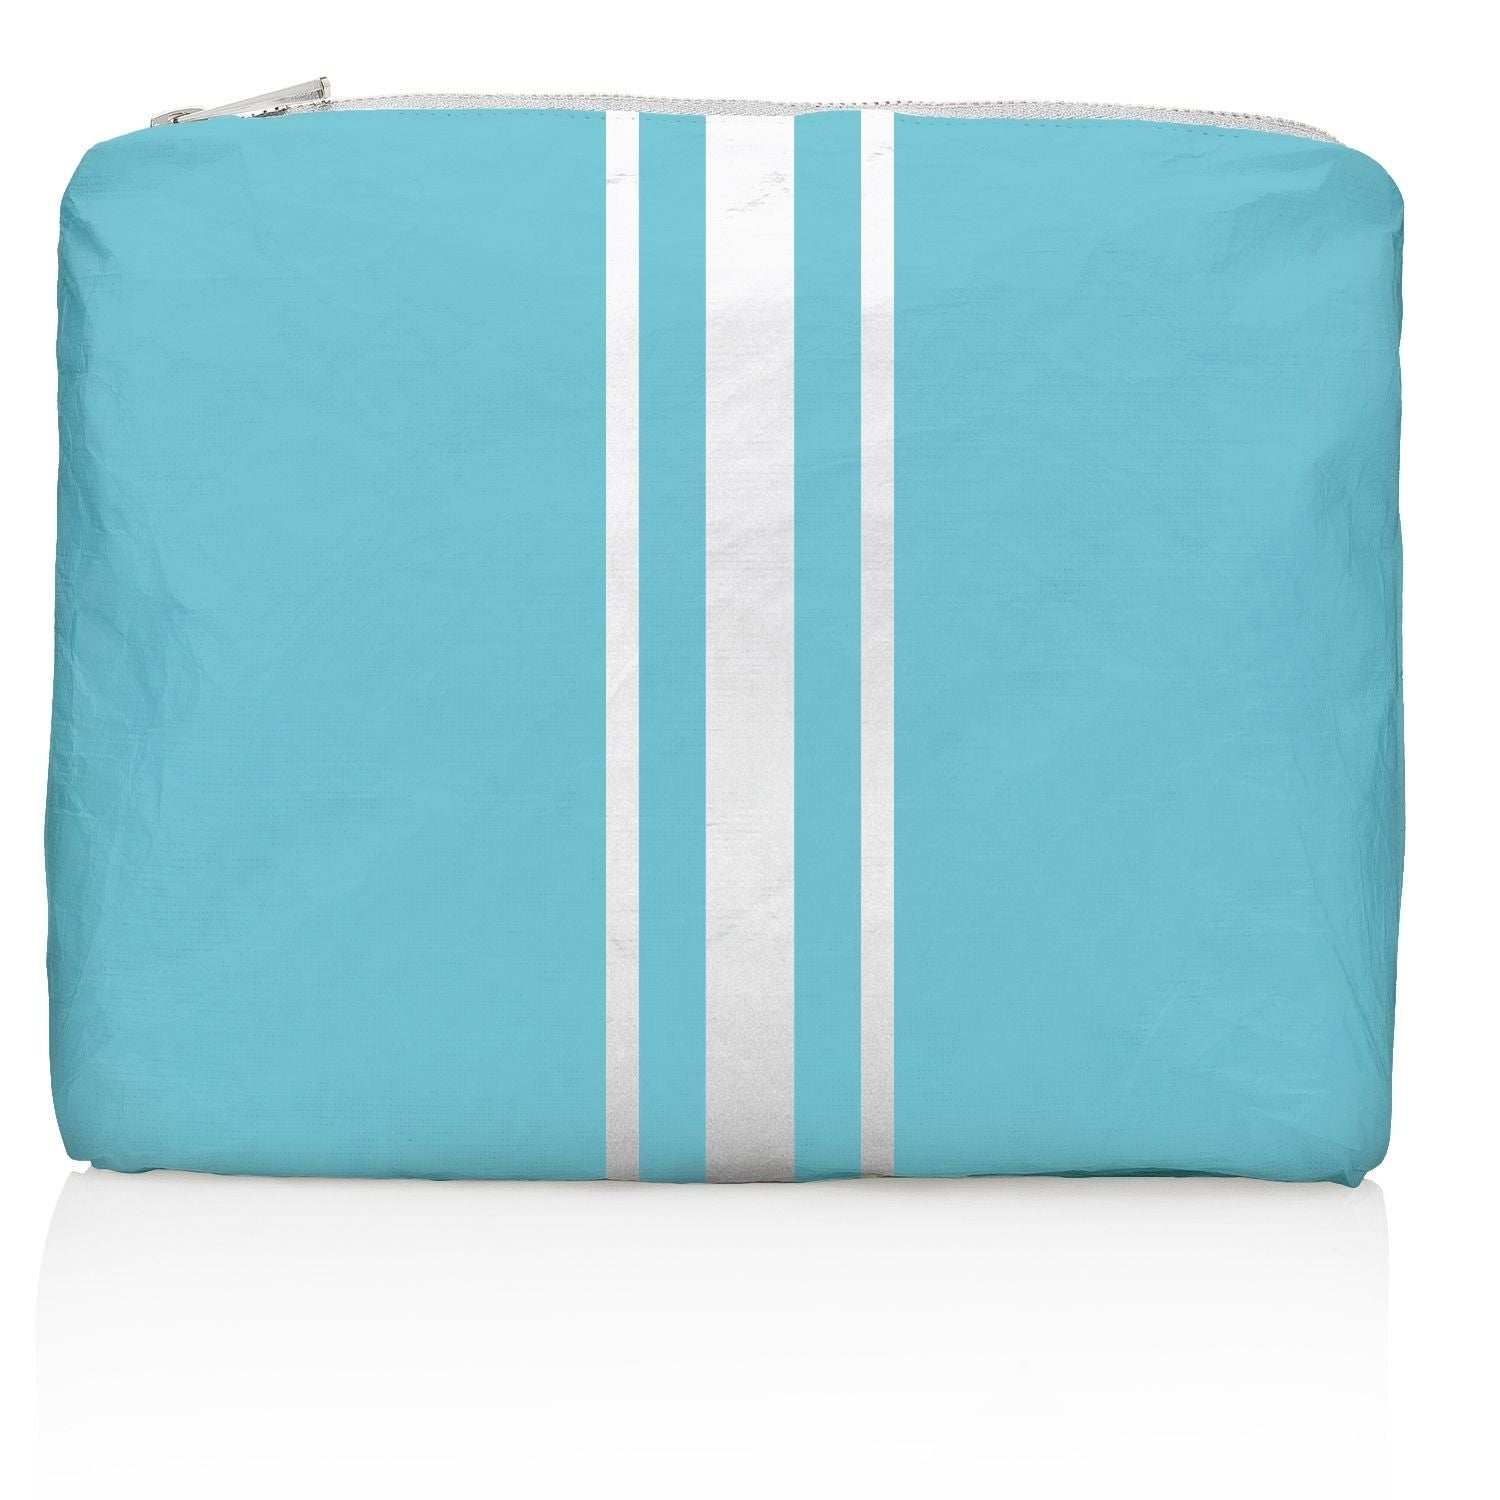 Medium Zipper Pack in Capri Sea Blue with White Stripes